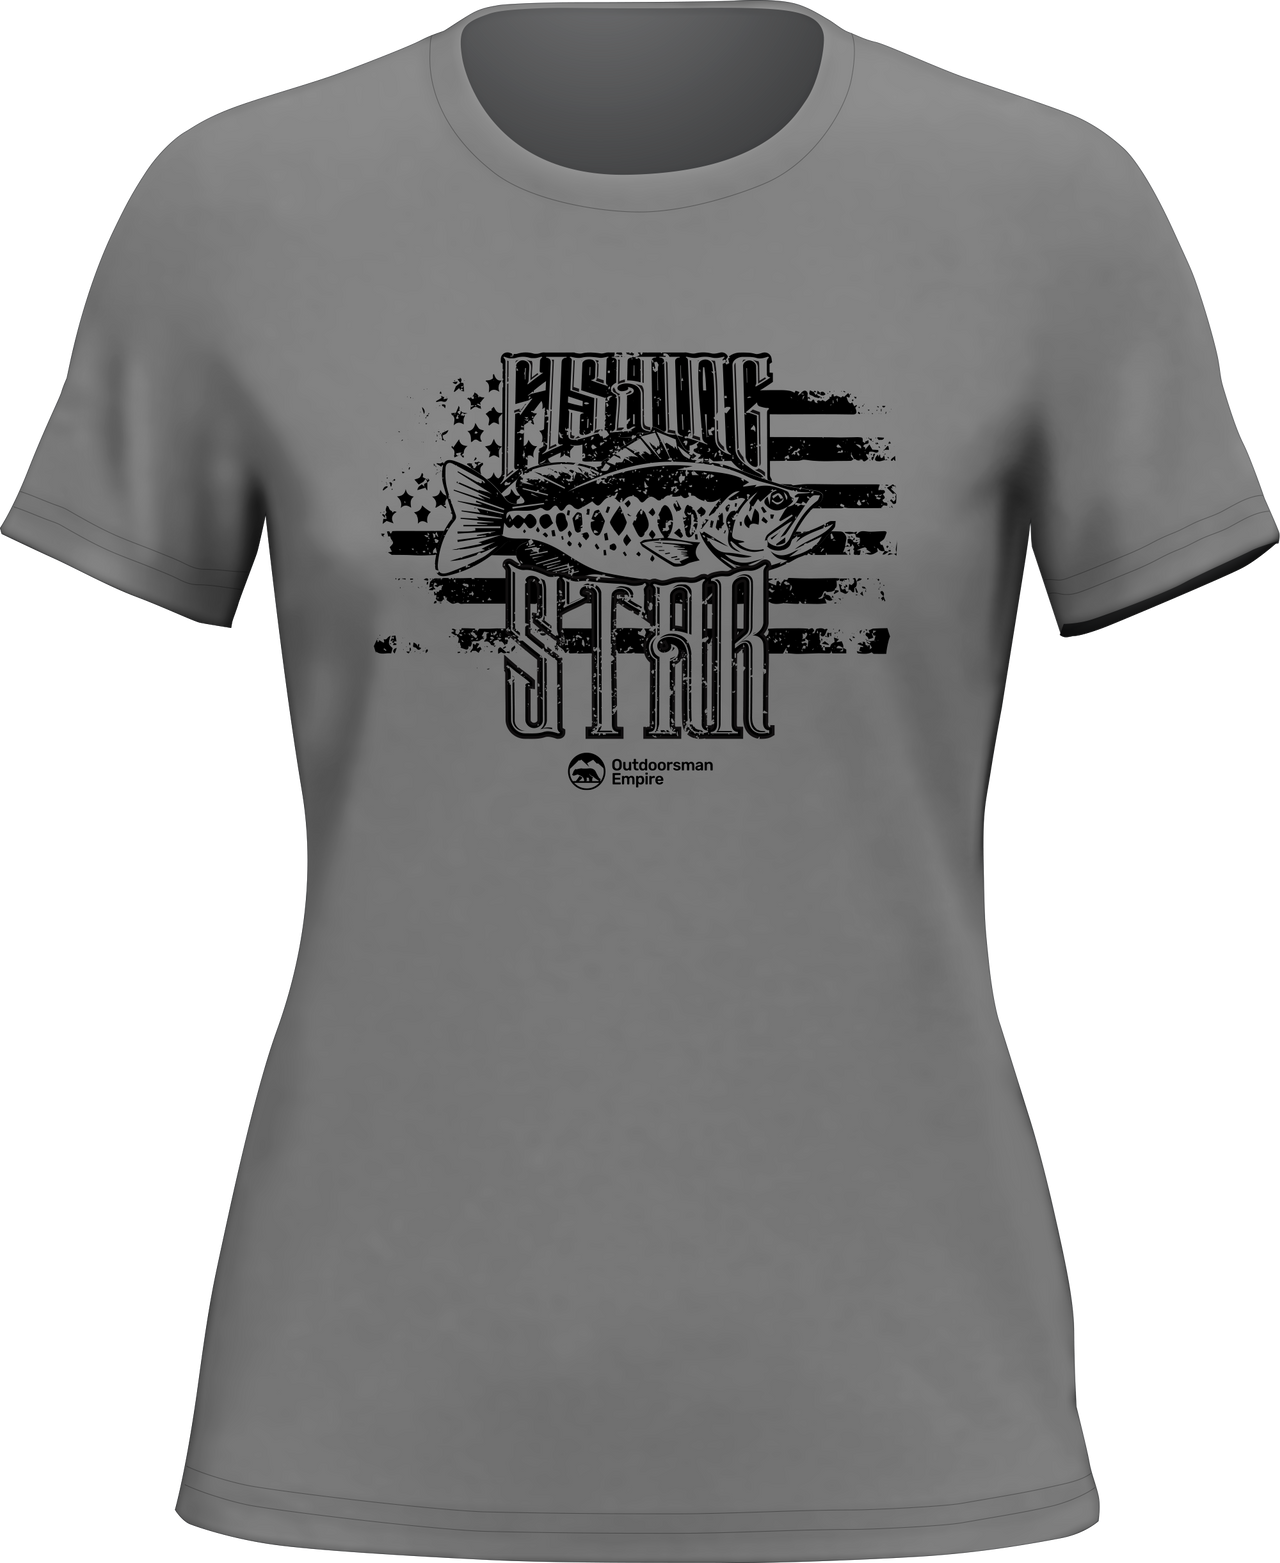 Fishing Star T-Shirt for Women